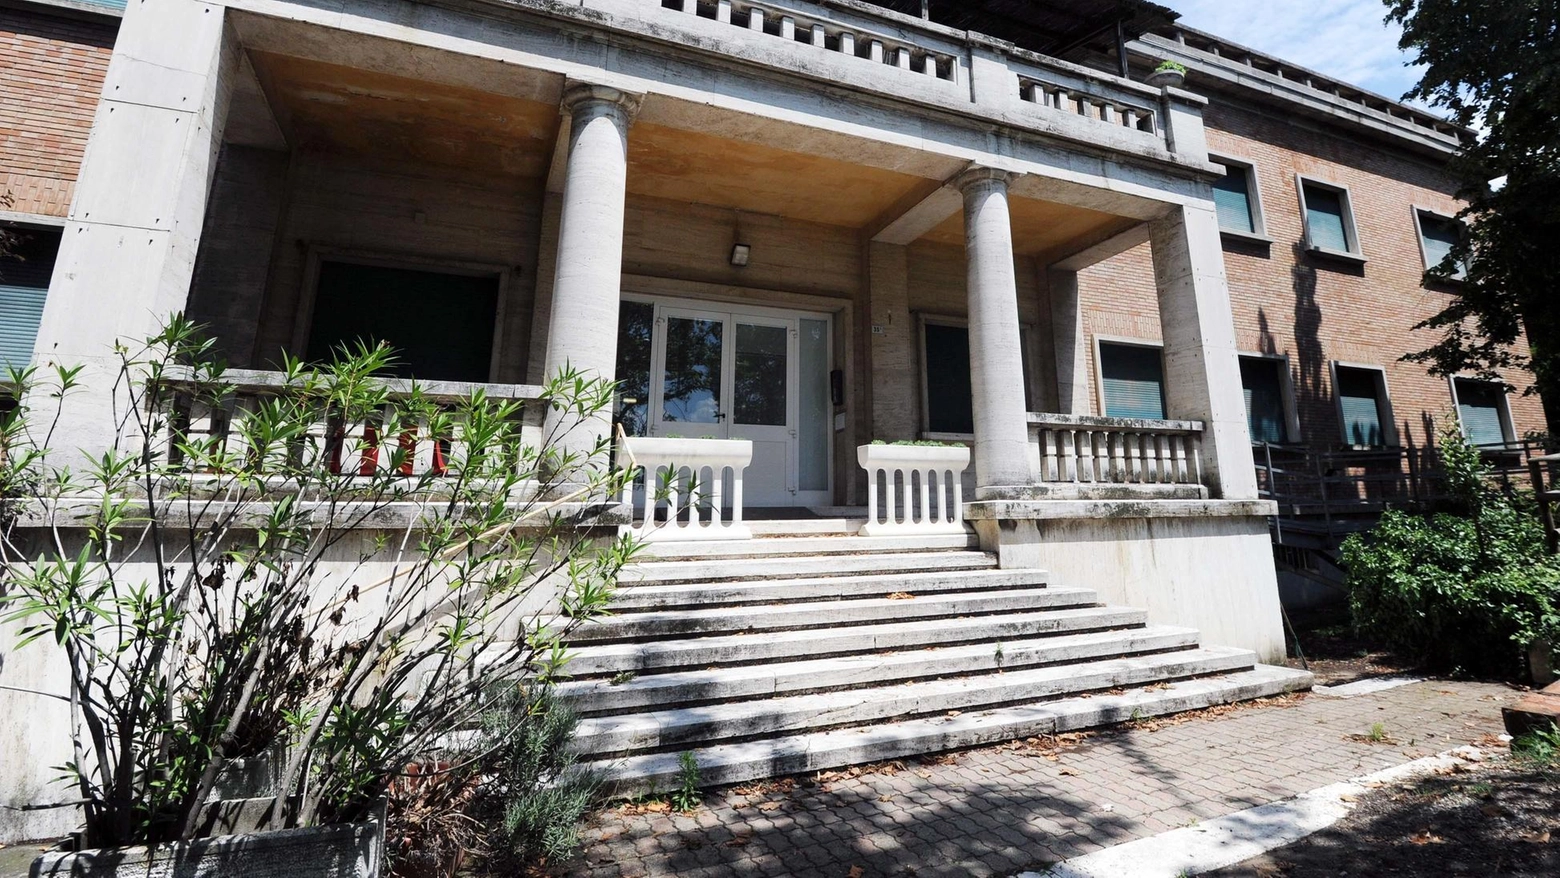 Villa Aldini, in via dell’Osservanza, ha ospitato fino a pochi giorni fa una struttura per minori stranieri non accompagnati